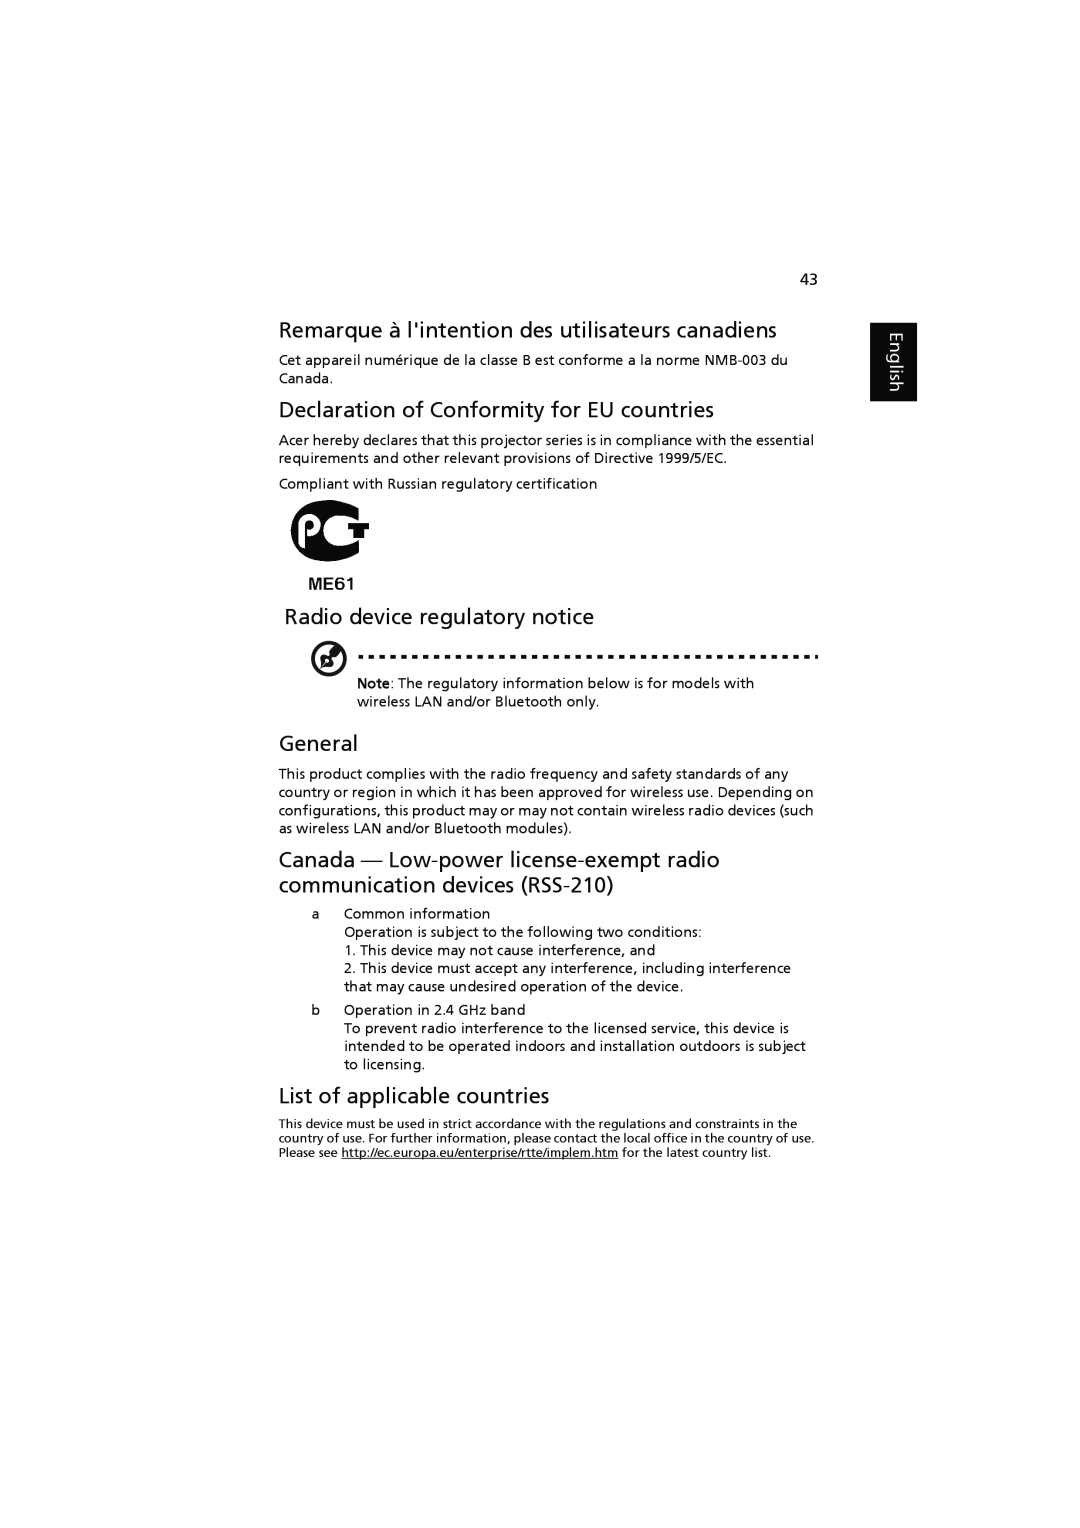 Acer H7531D Remarque à lintention des utilisateurs canadiens, Declaration of Conformity for EU countries, General, English 